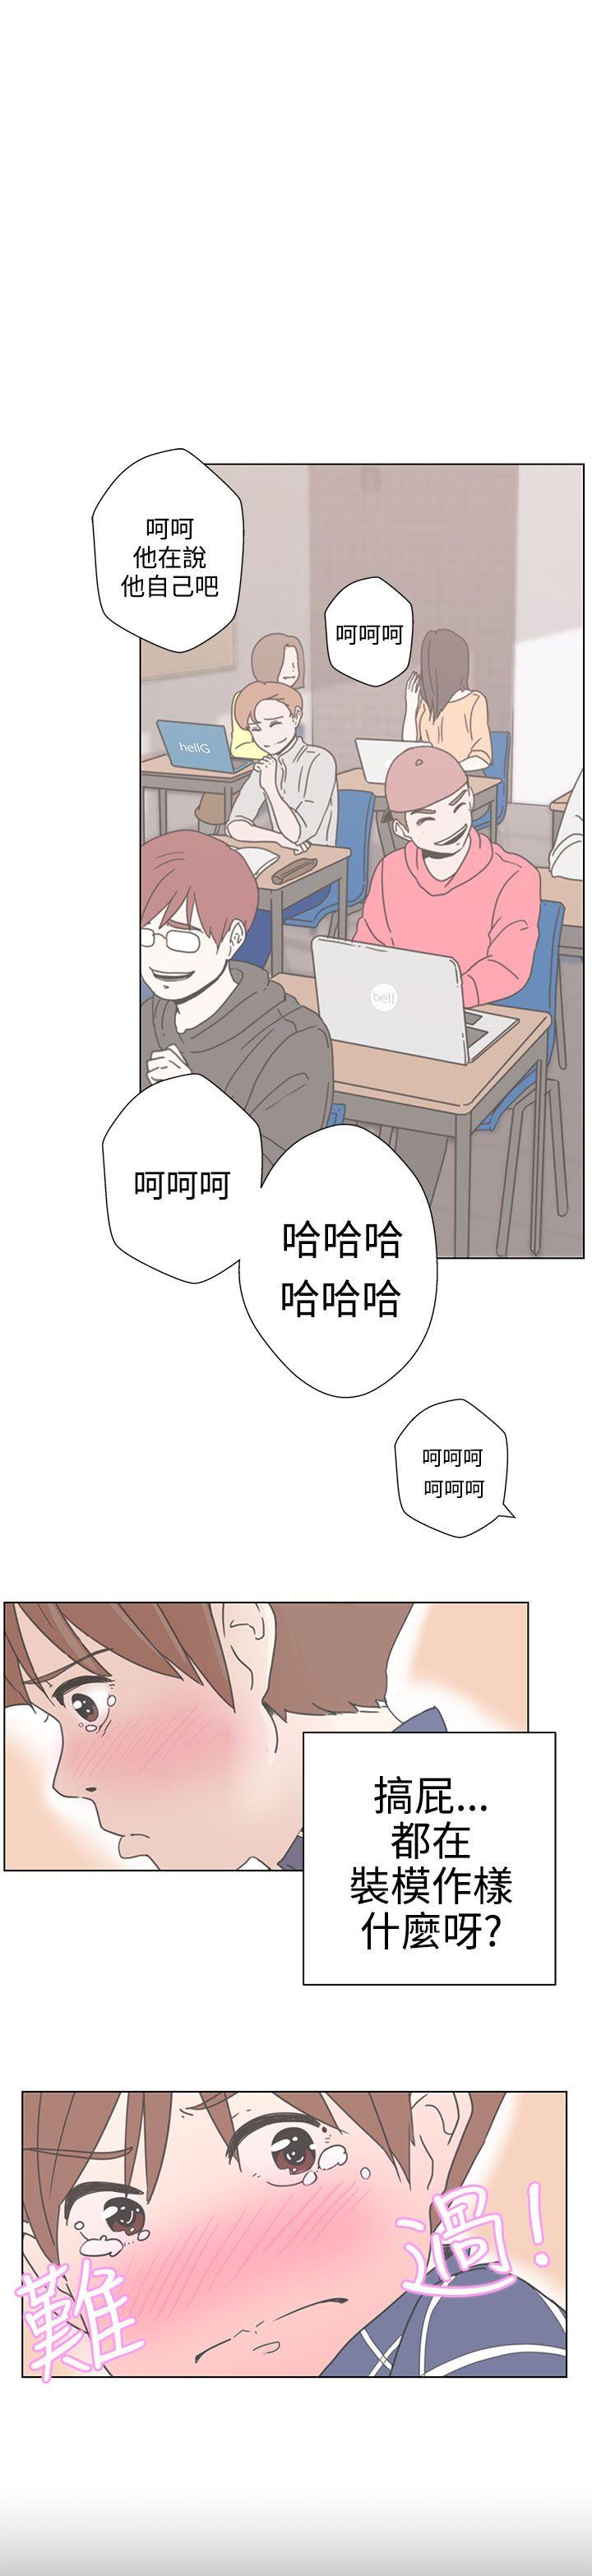 韩国污漫画 LOVE 愛的導航G 第1话 23